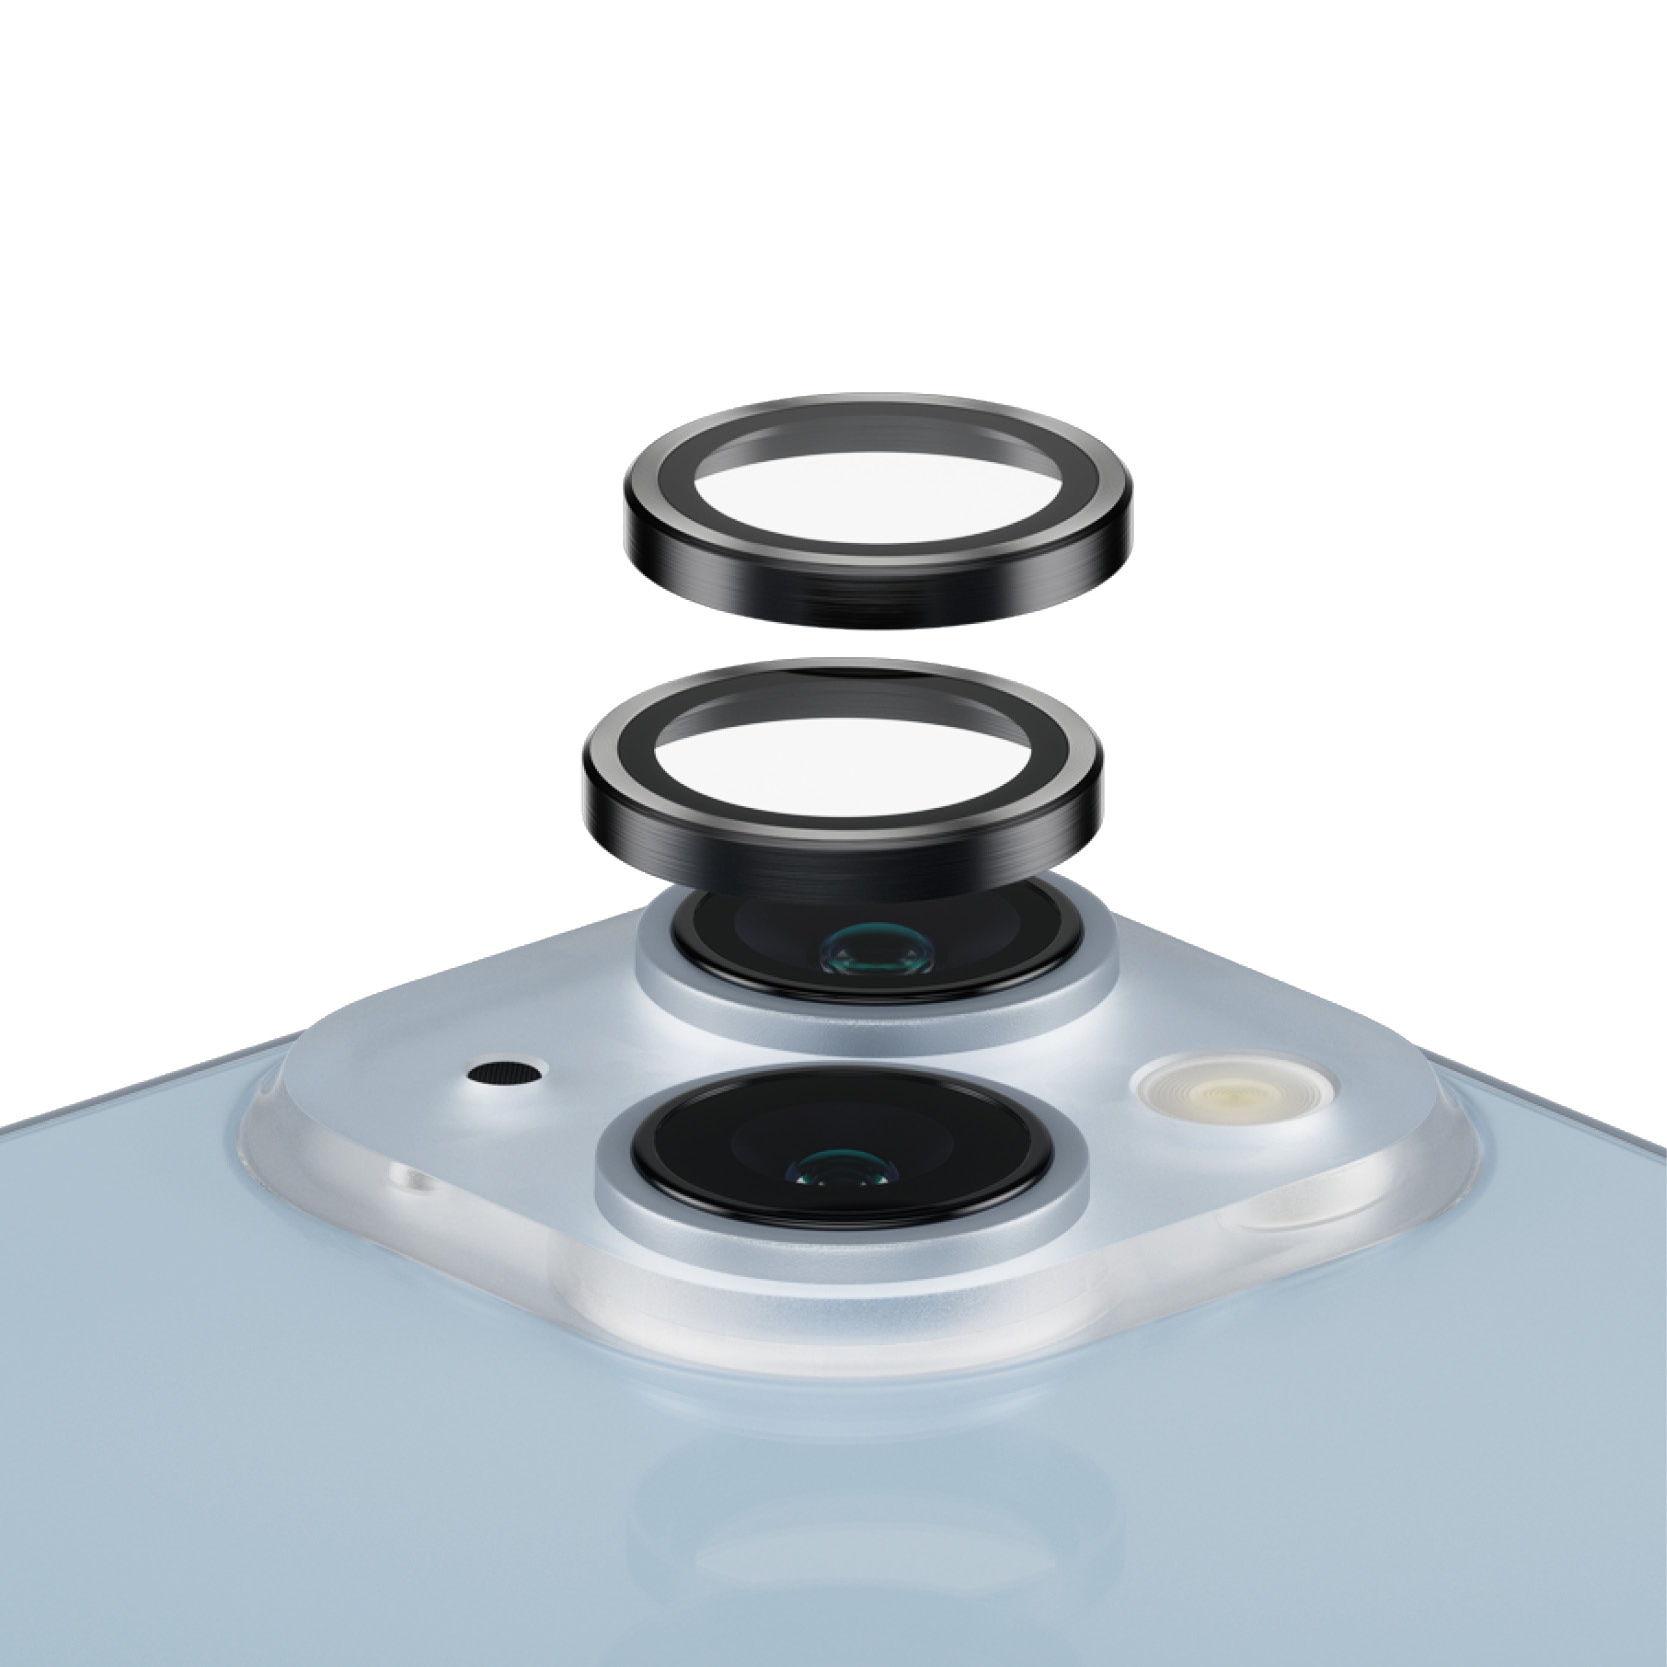 iPhone 14 Plus Hoops linsskydd med aluminiumram, svart